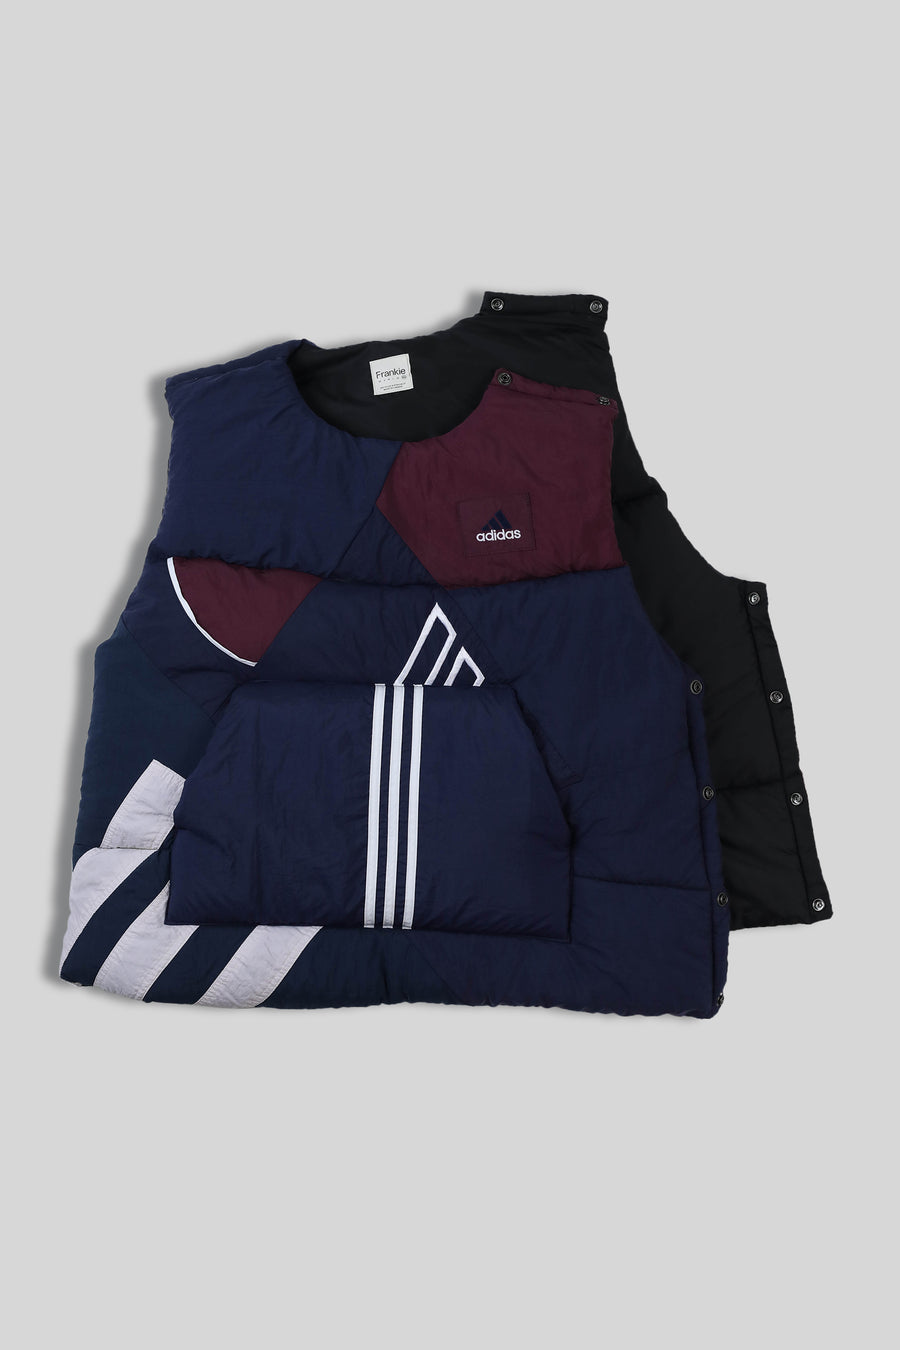 Rework Adidas Puffer Vest - XXL